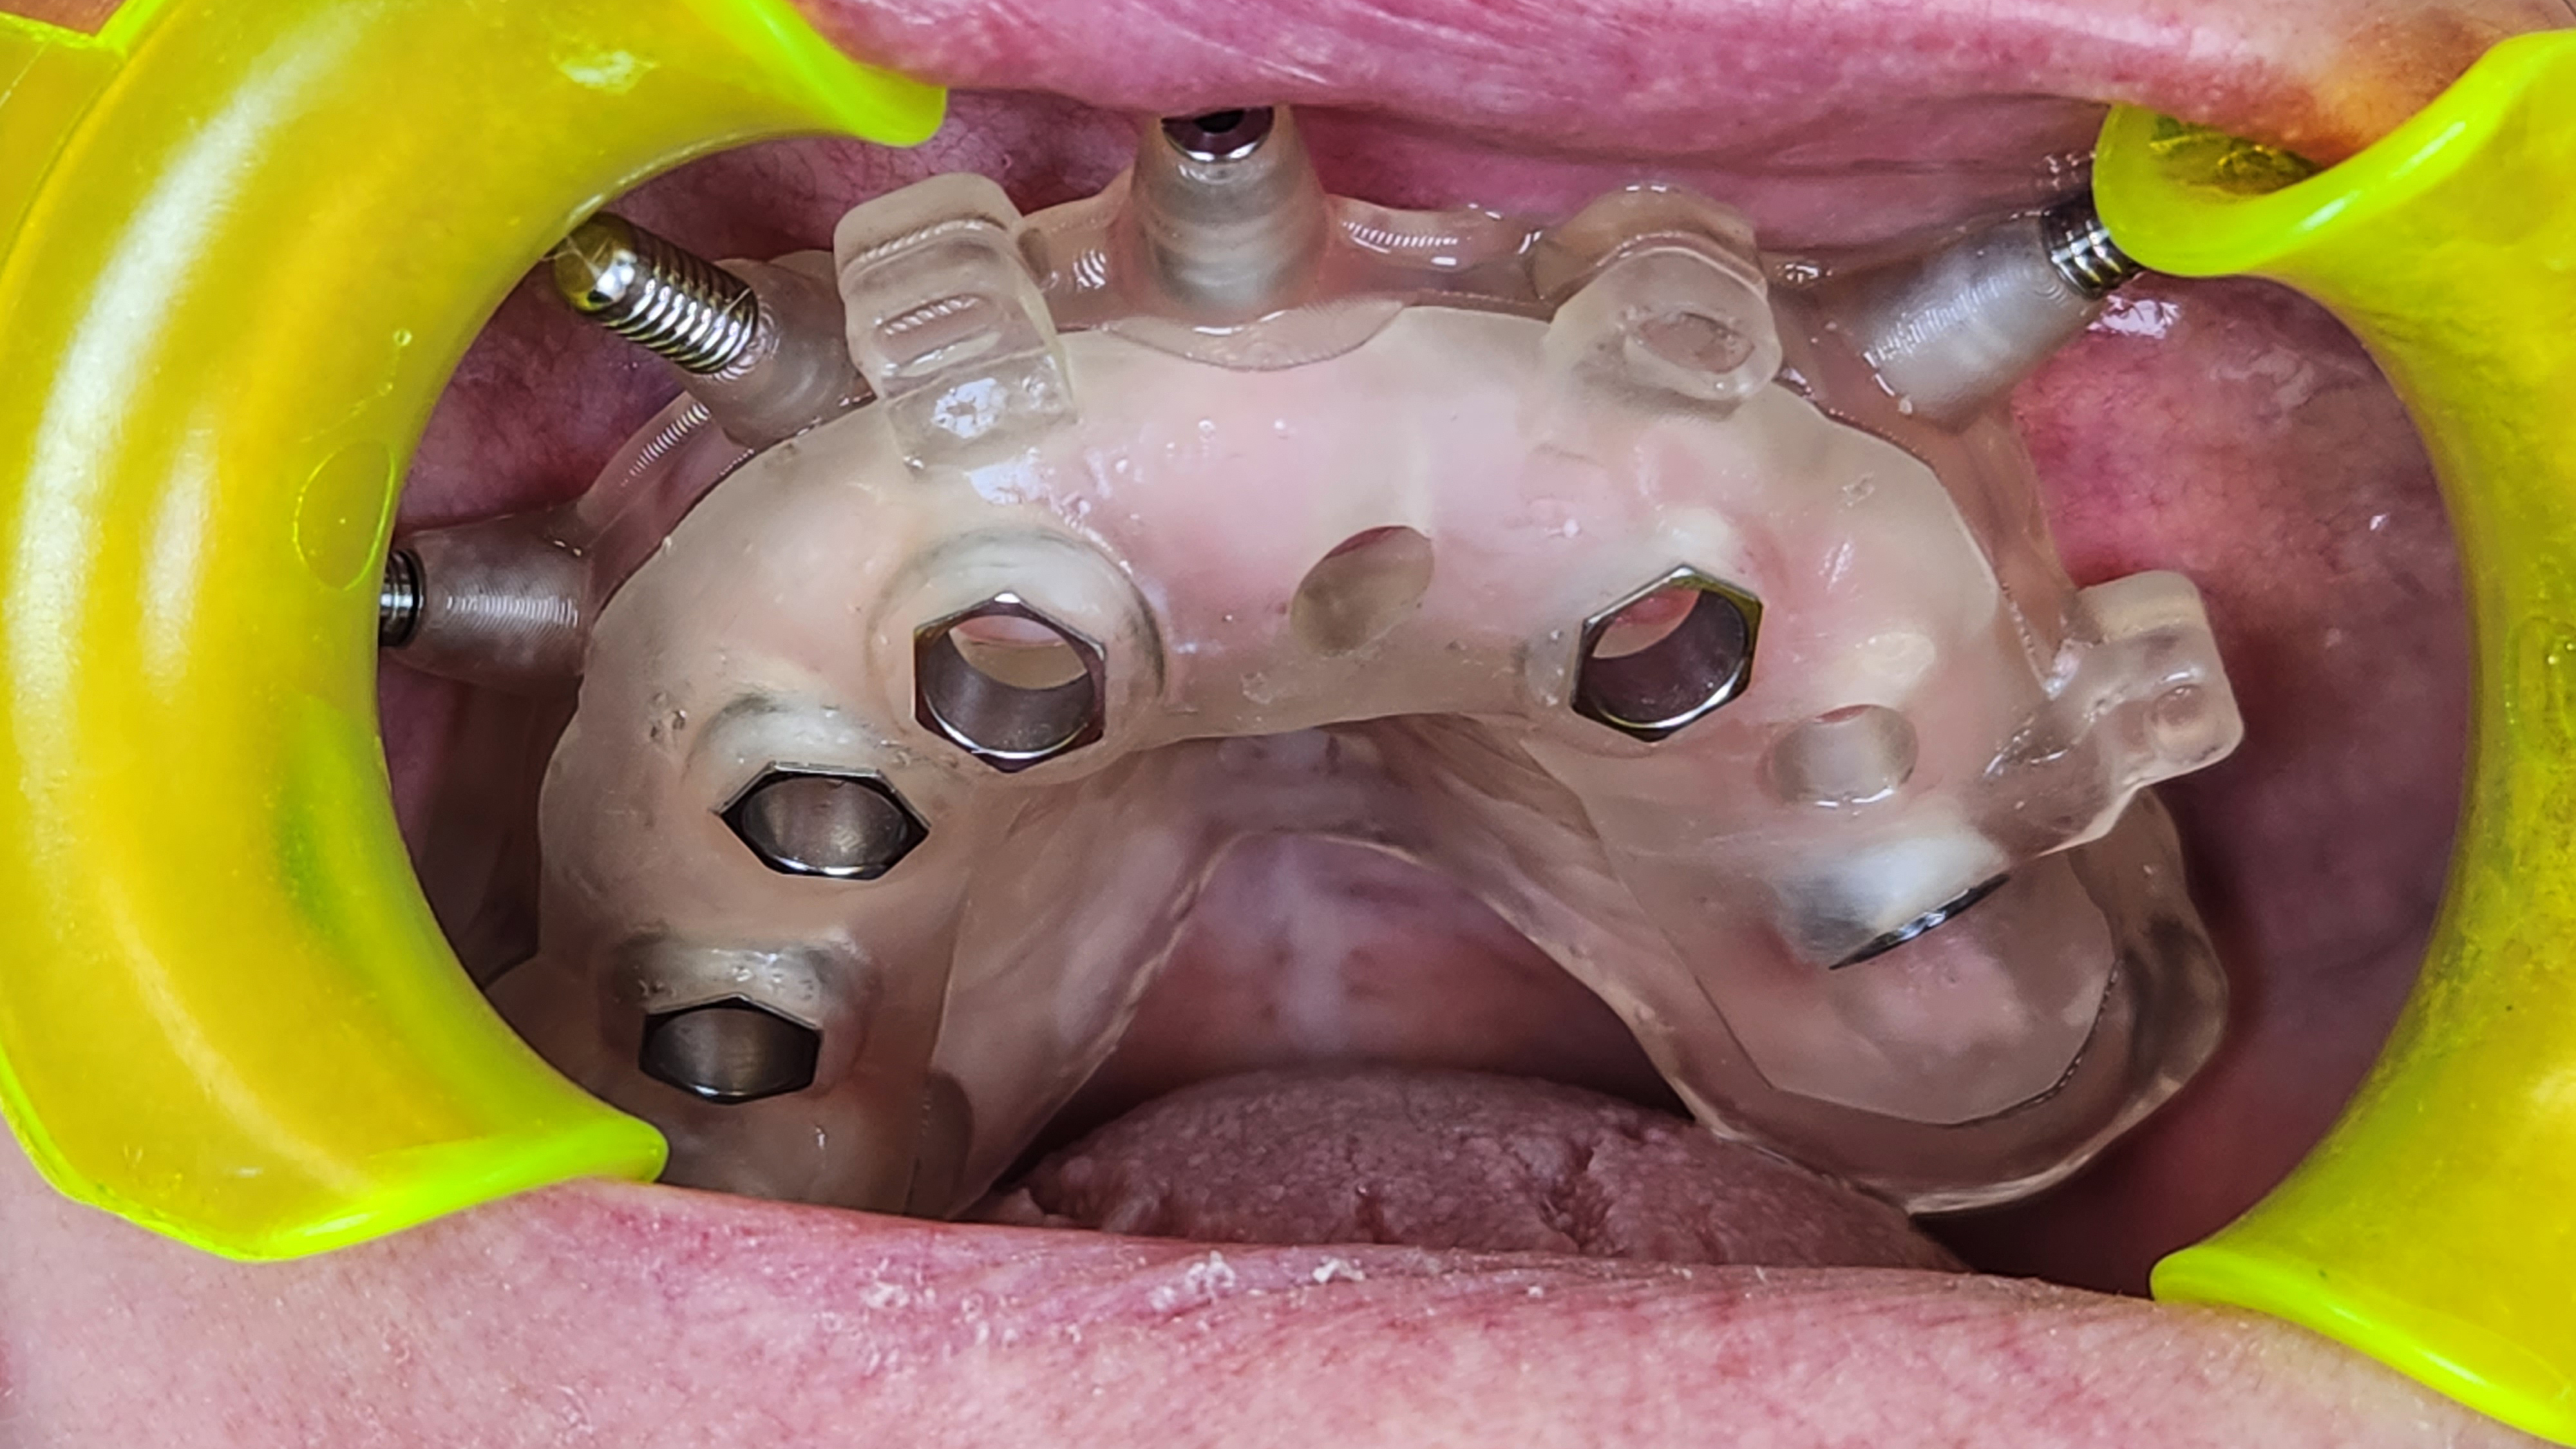 dettaglio del posizionamento della protesi all'interno della bocca